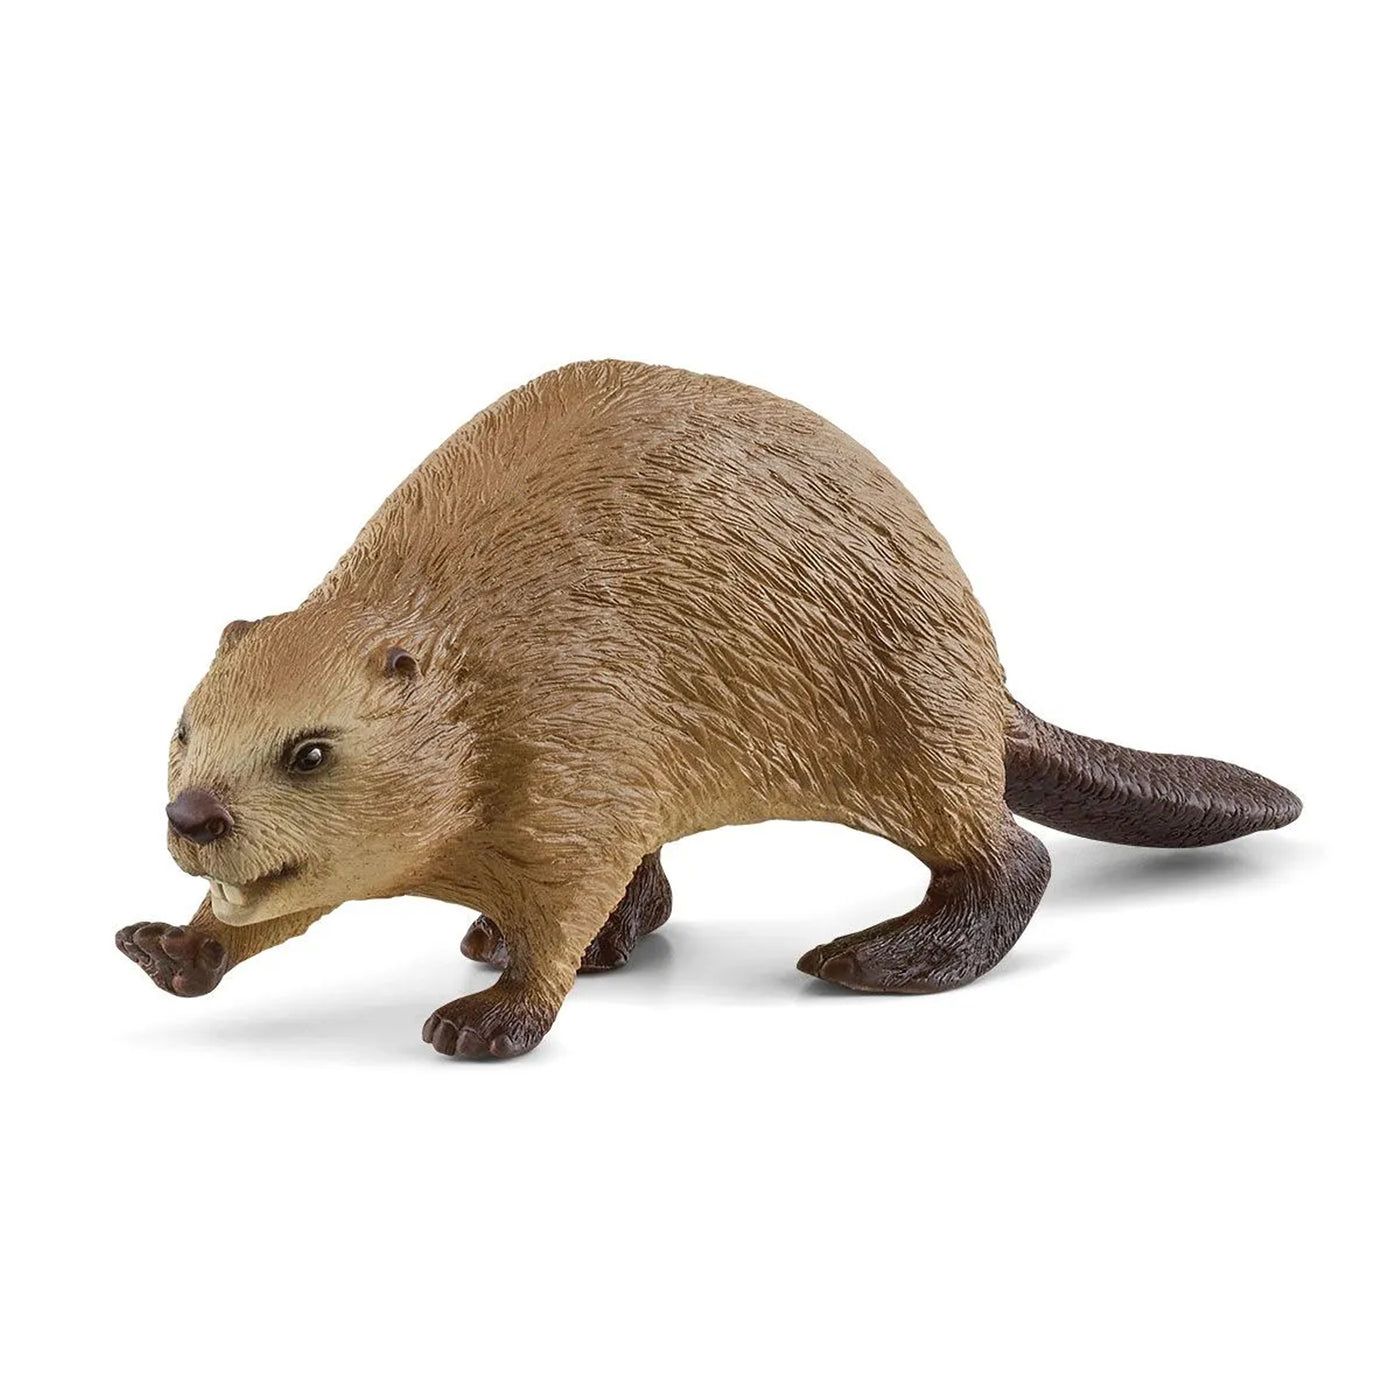 Schleich Wild Life Beaver toy figurine